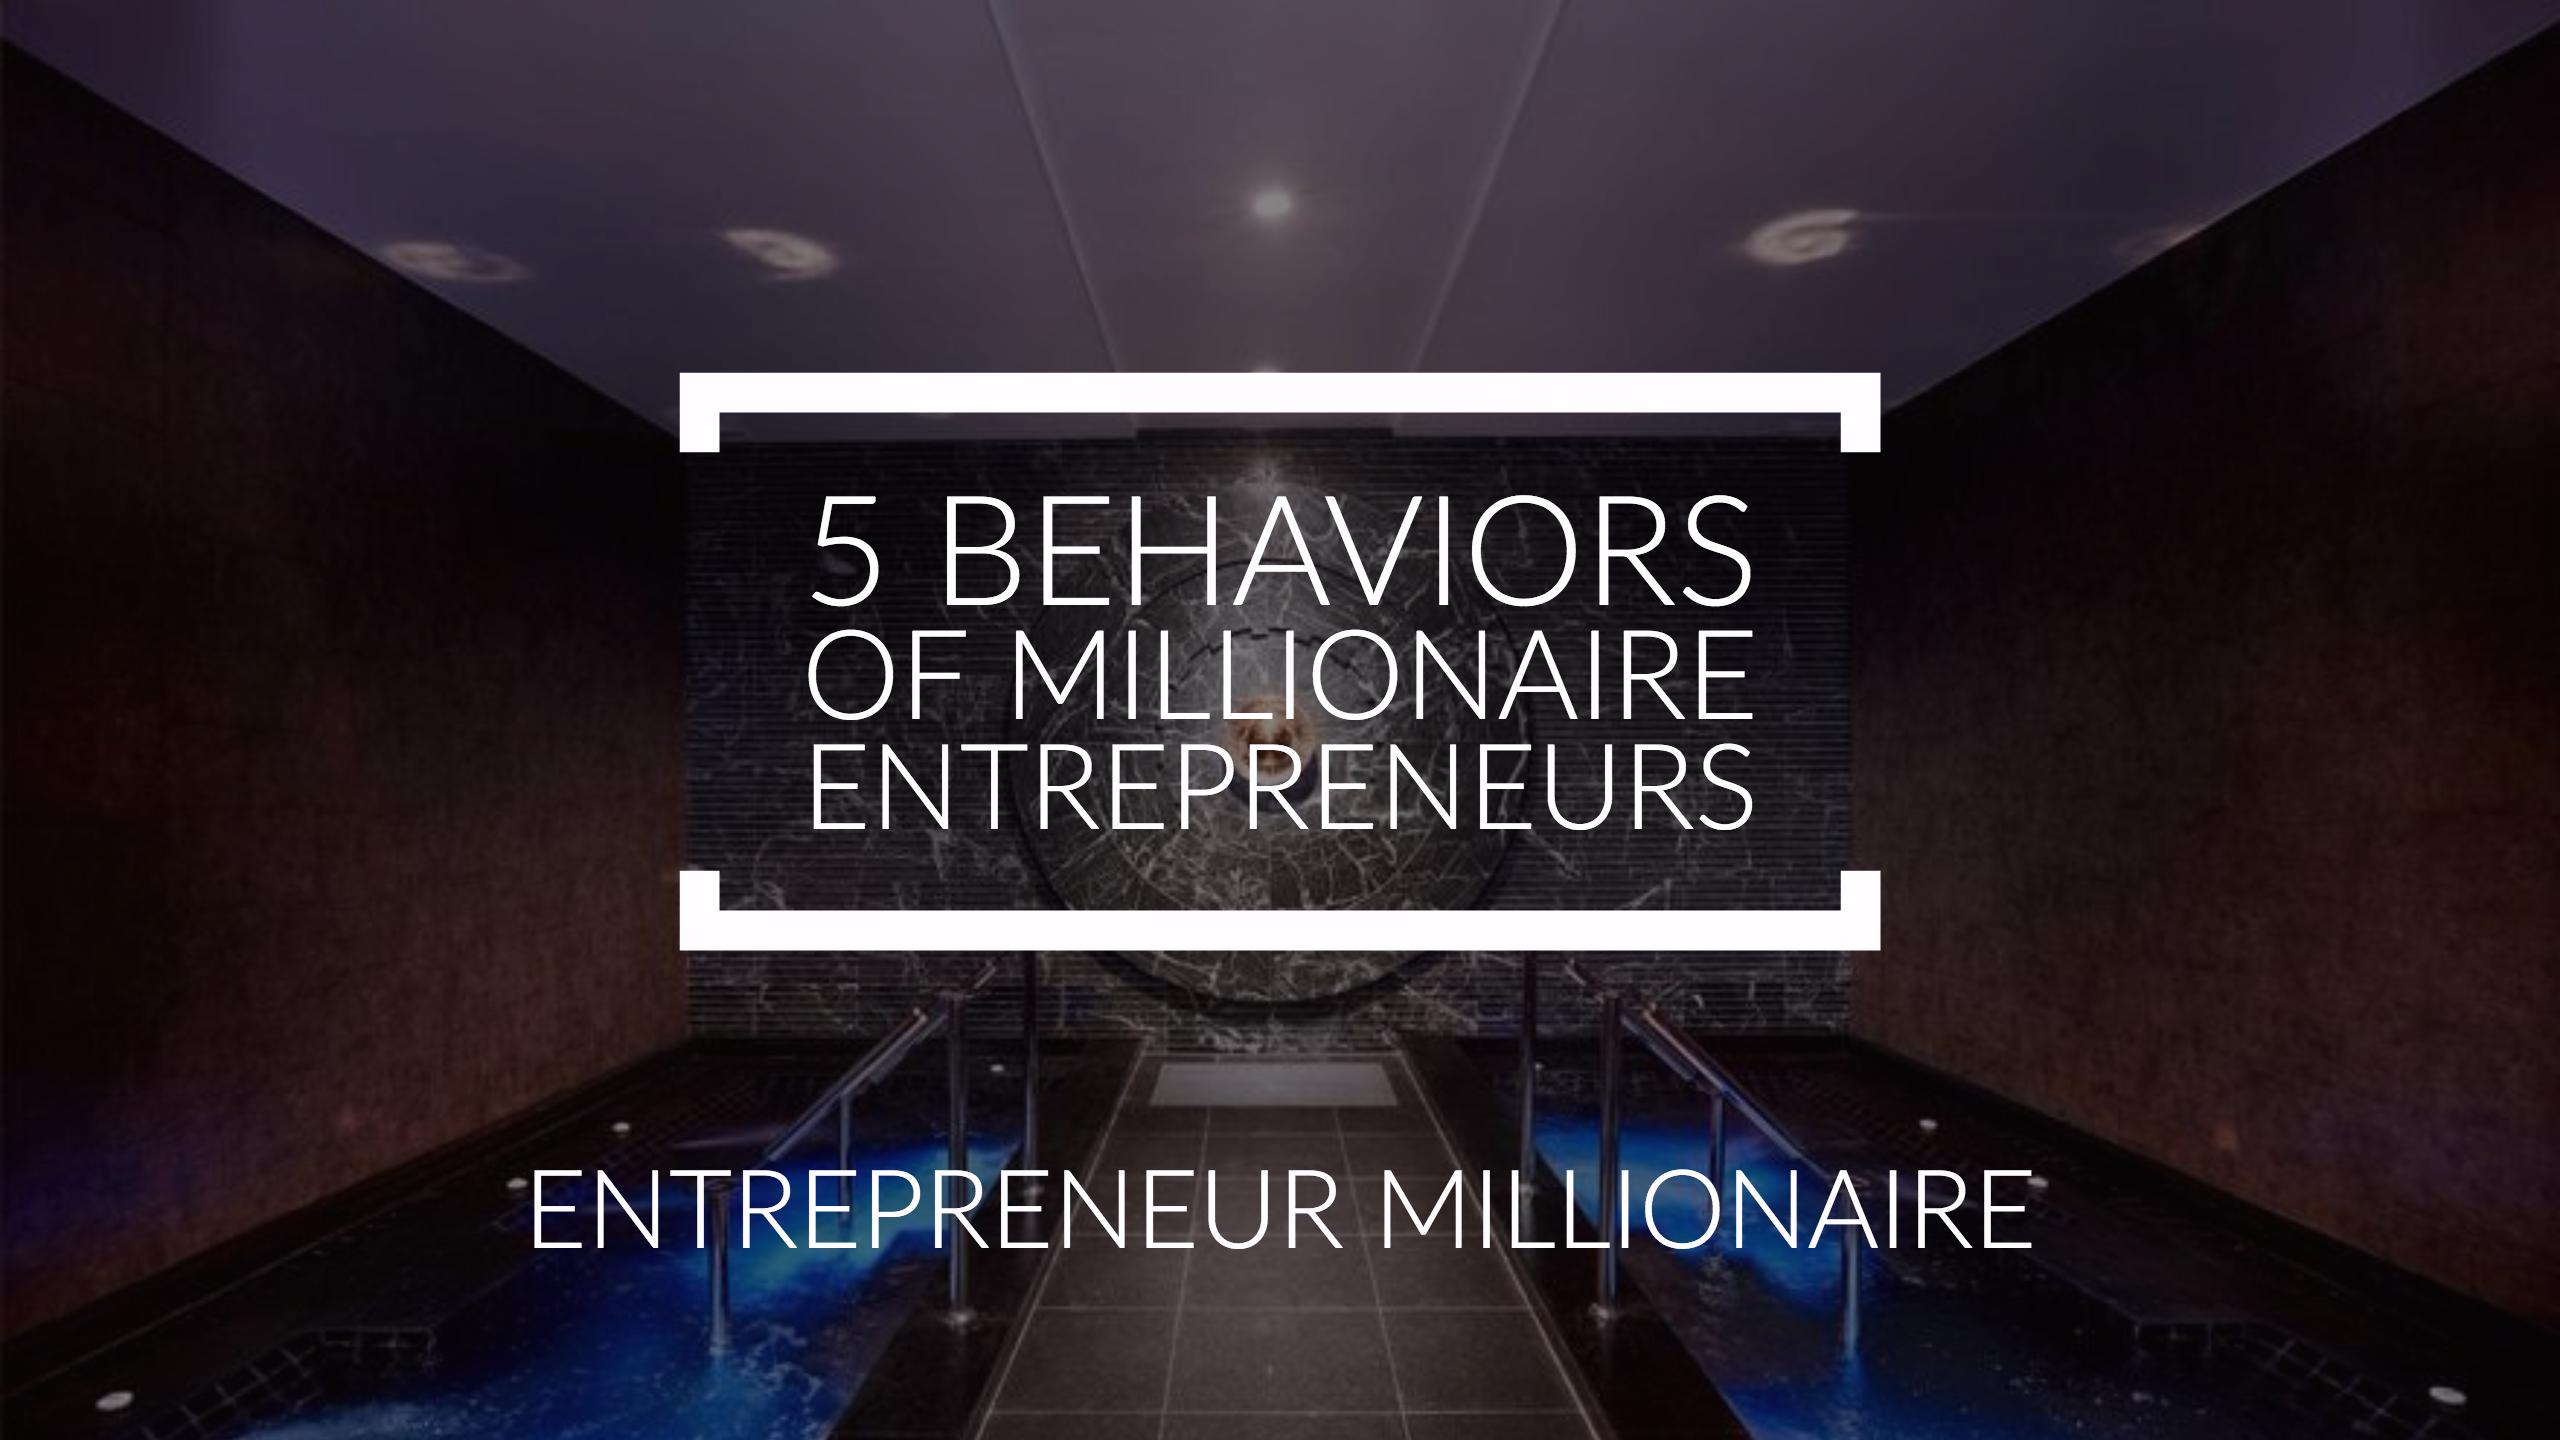 5 Behaviors of Millionaire Entrepreneurs